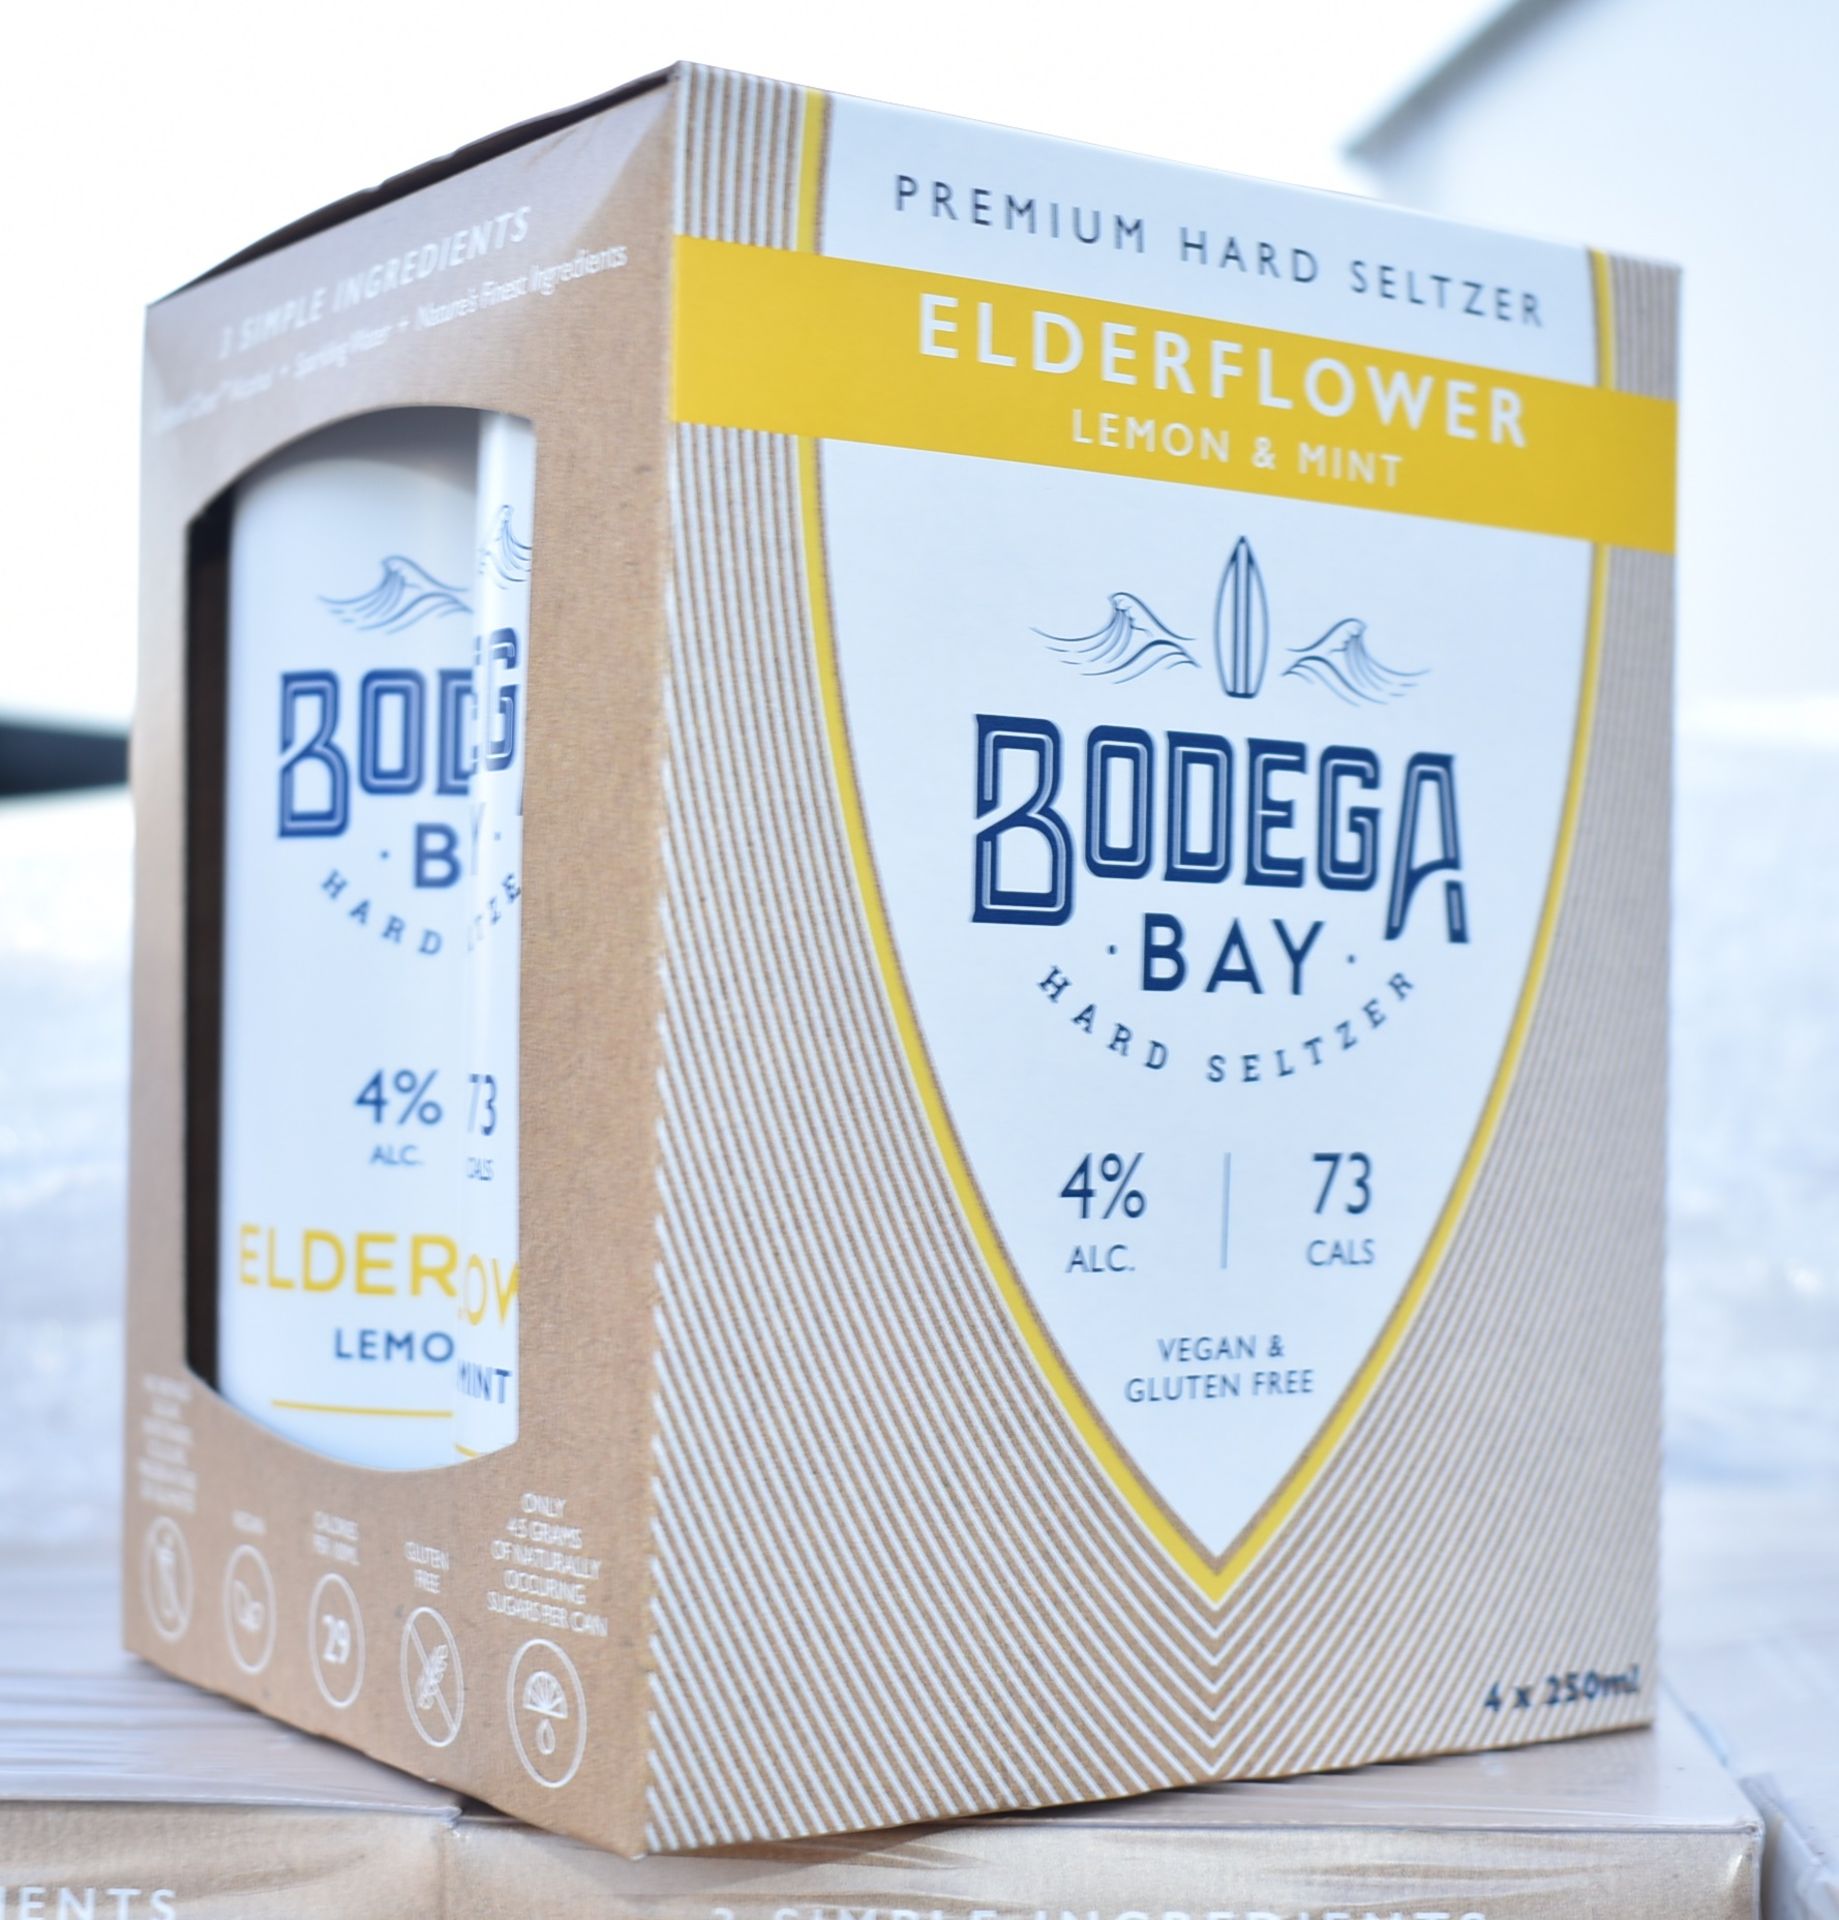 24 x Bodega Bay Hard Seltzer 250ml Alcoholic Sparkling Water Drinks - Elderflower Lemon & Mint - - Image 6 of 7